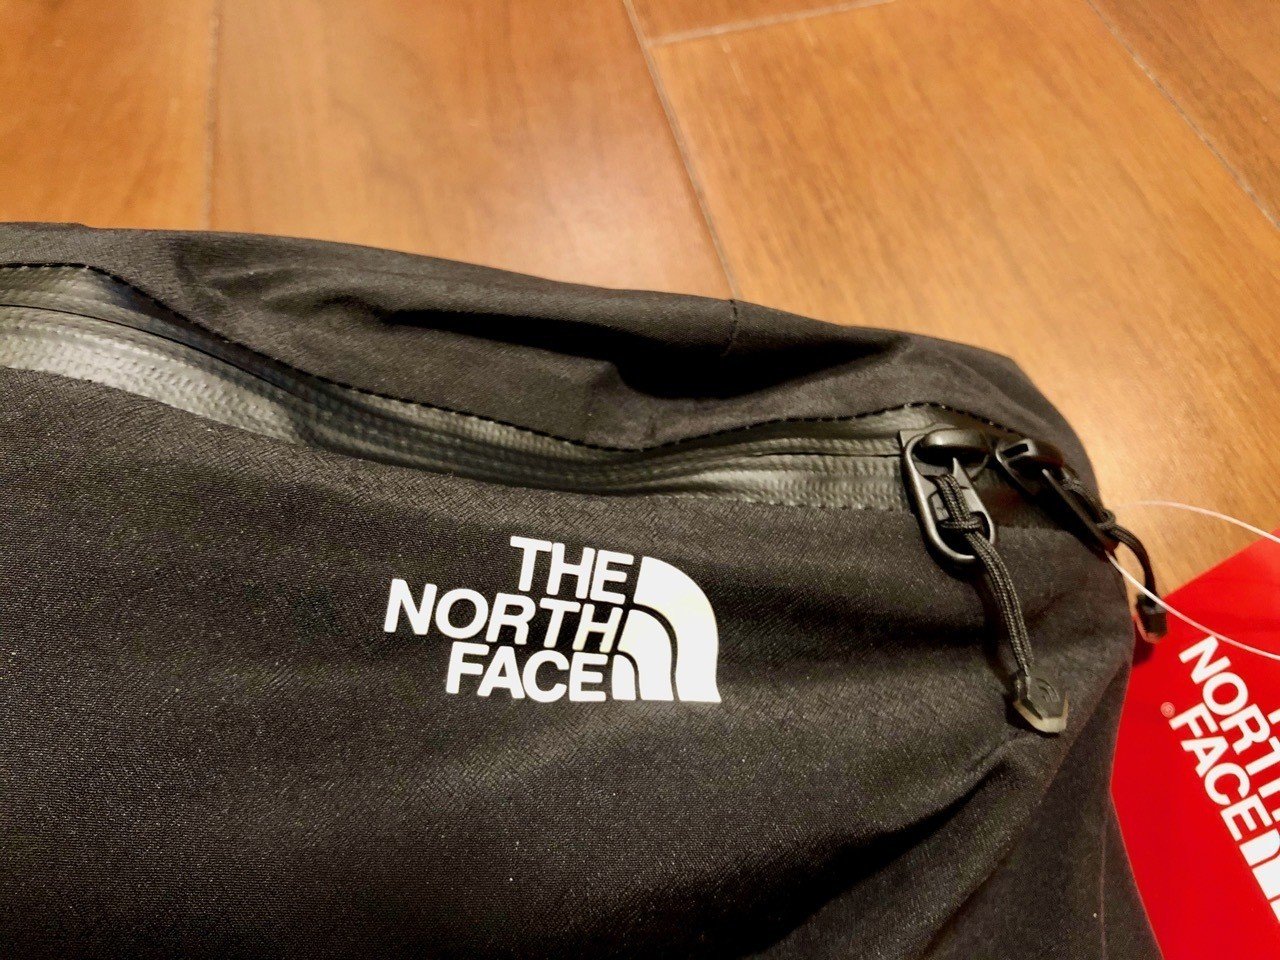 スノボ用のウエストバッグは防水素材のTHE NORTH FACE ウエスト